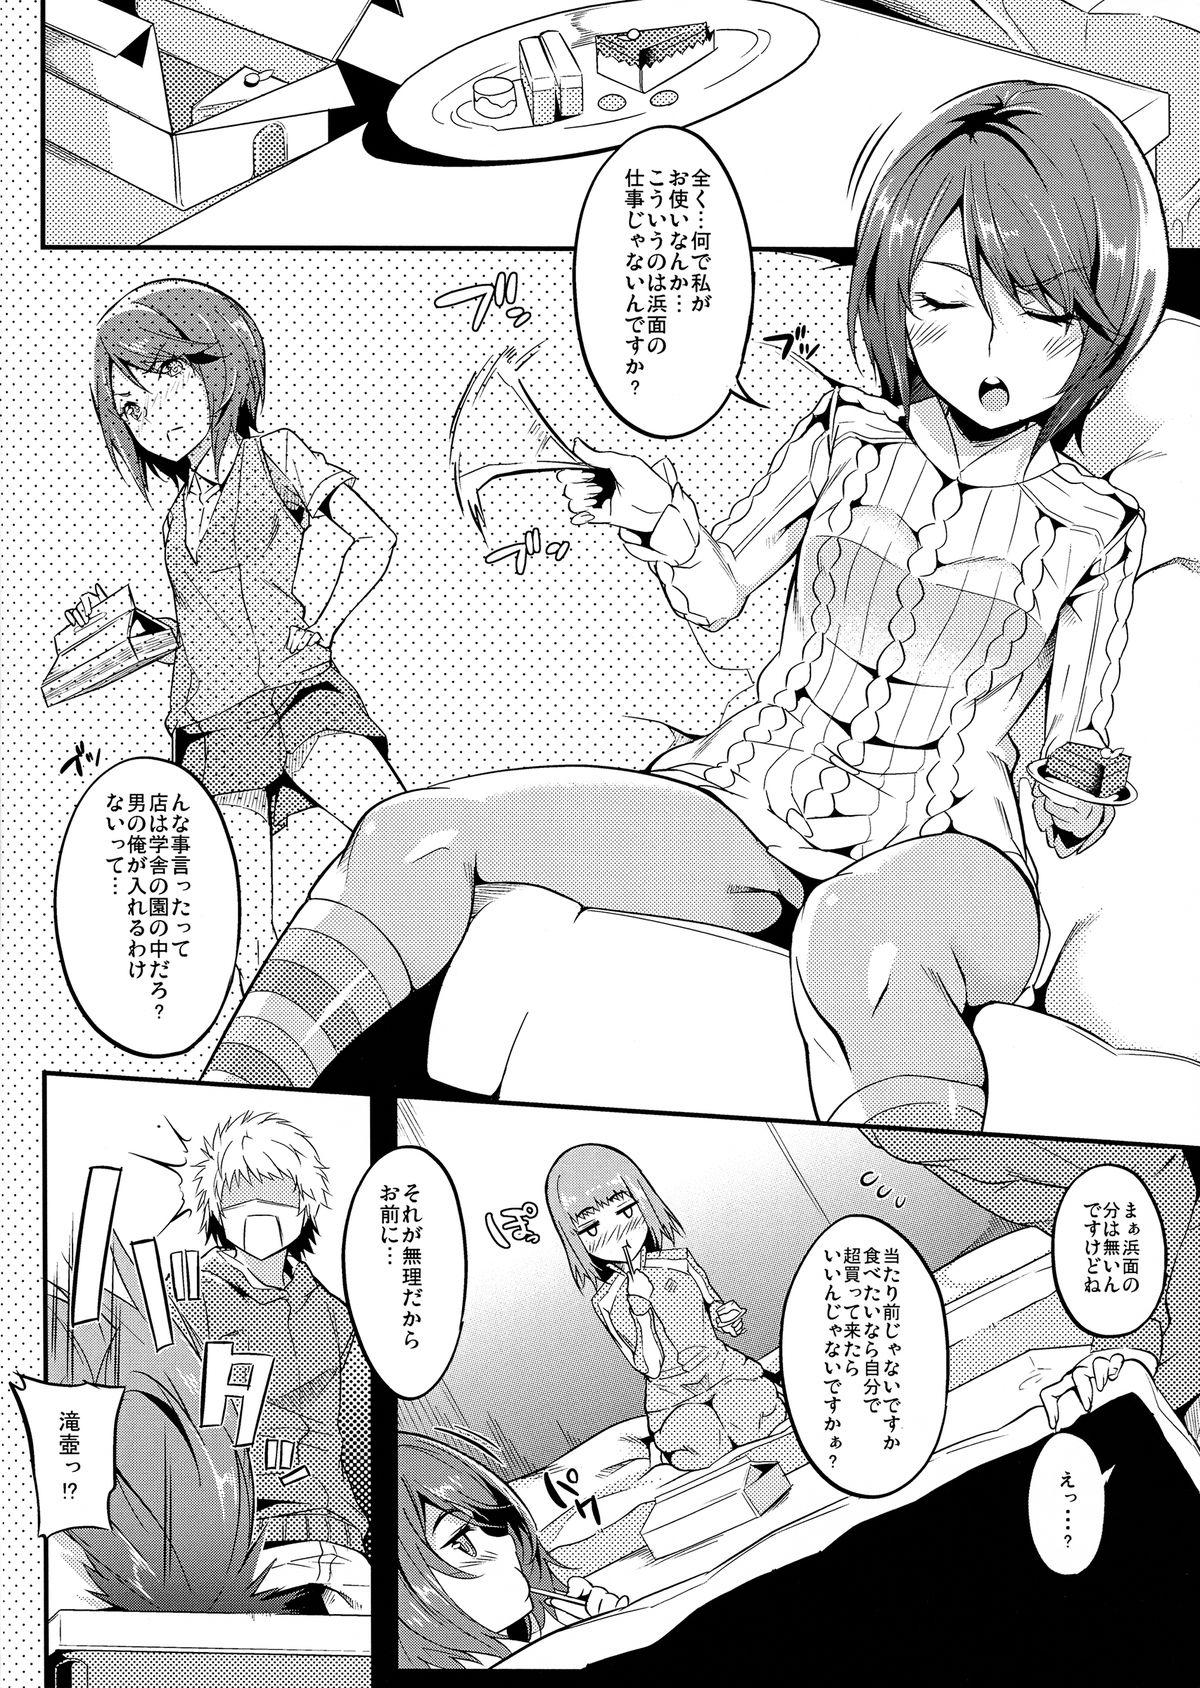 Perfect Tits Saiai to Rikou no Hon - Toaru majutsu no index Cums - Page 3